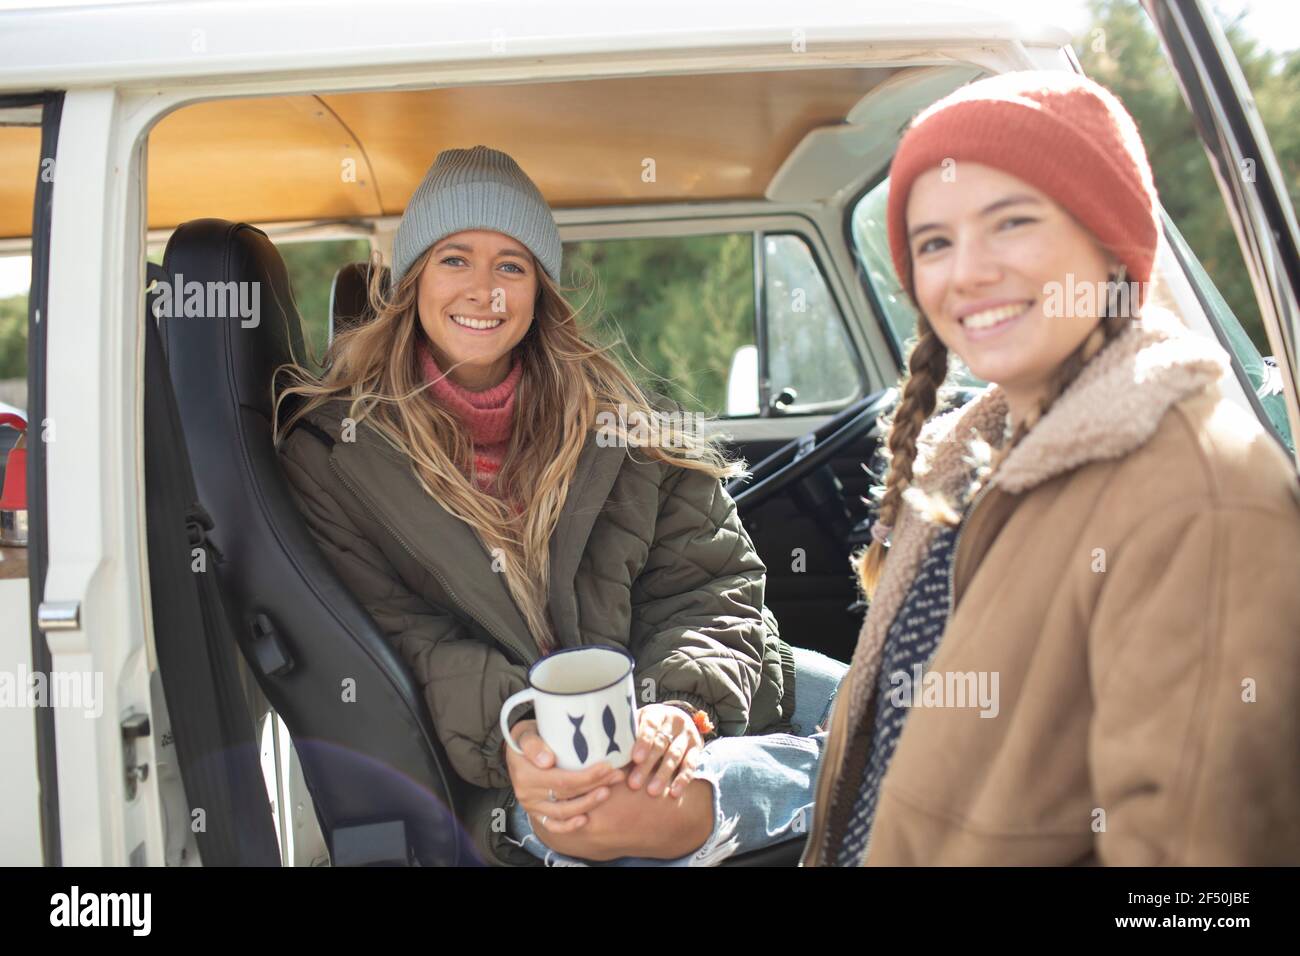 Portrait happy young women friends drinking coffee in van doorway Stock Photo